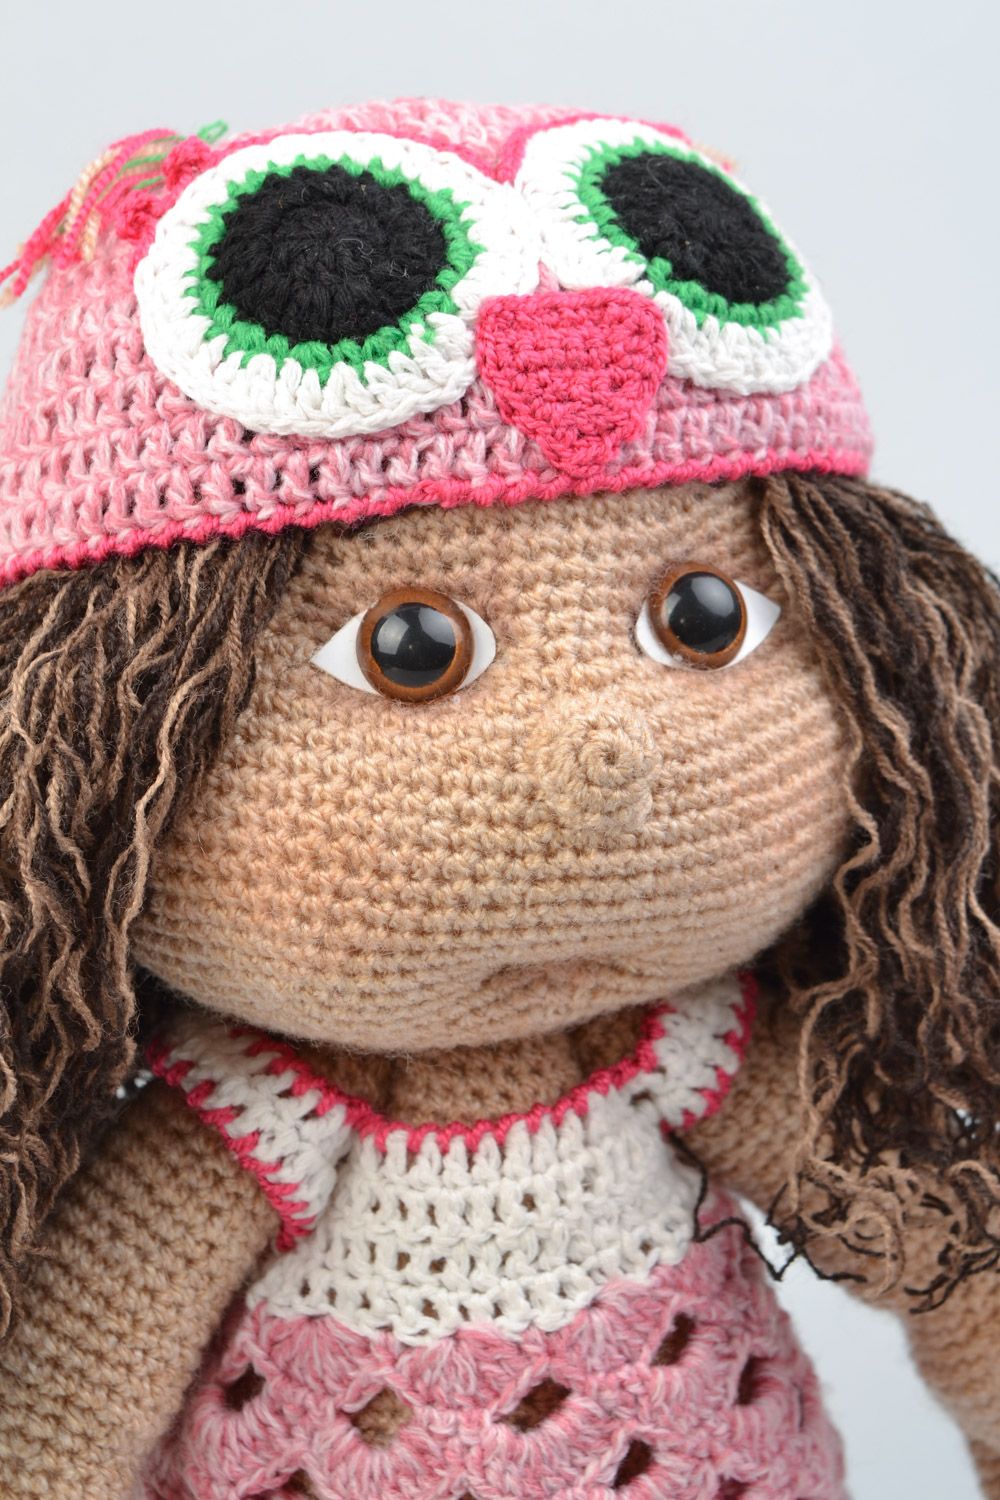 Handmade soft crochet toy girl doll for children photo 4